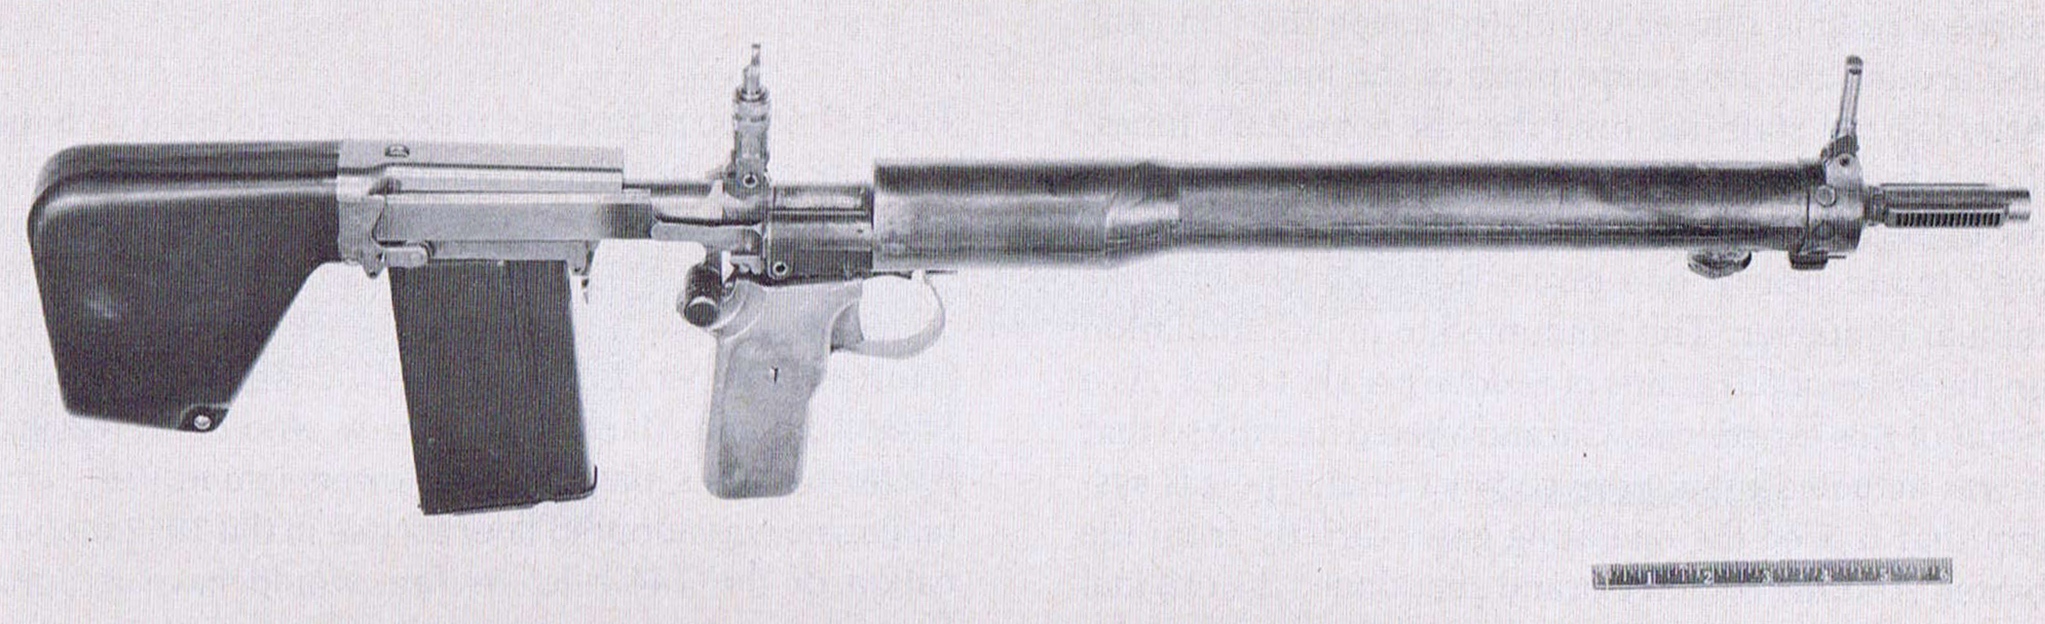 Garand T31 experimental bullpup rifle (first model) .